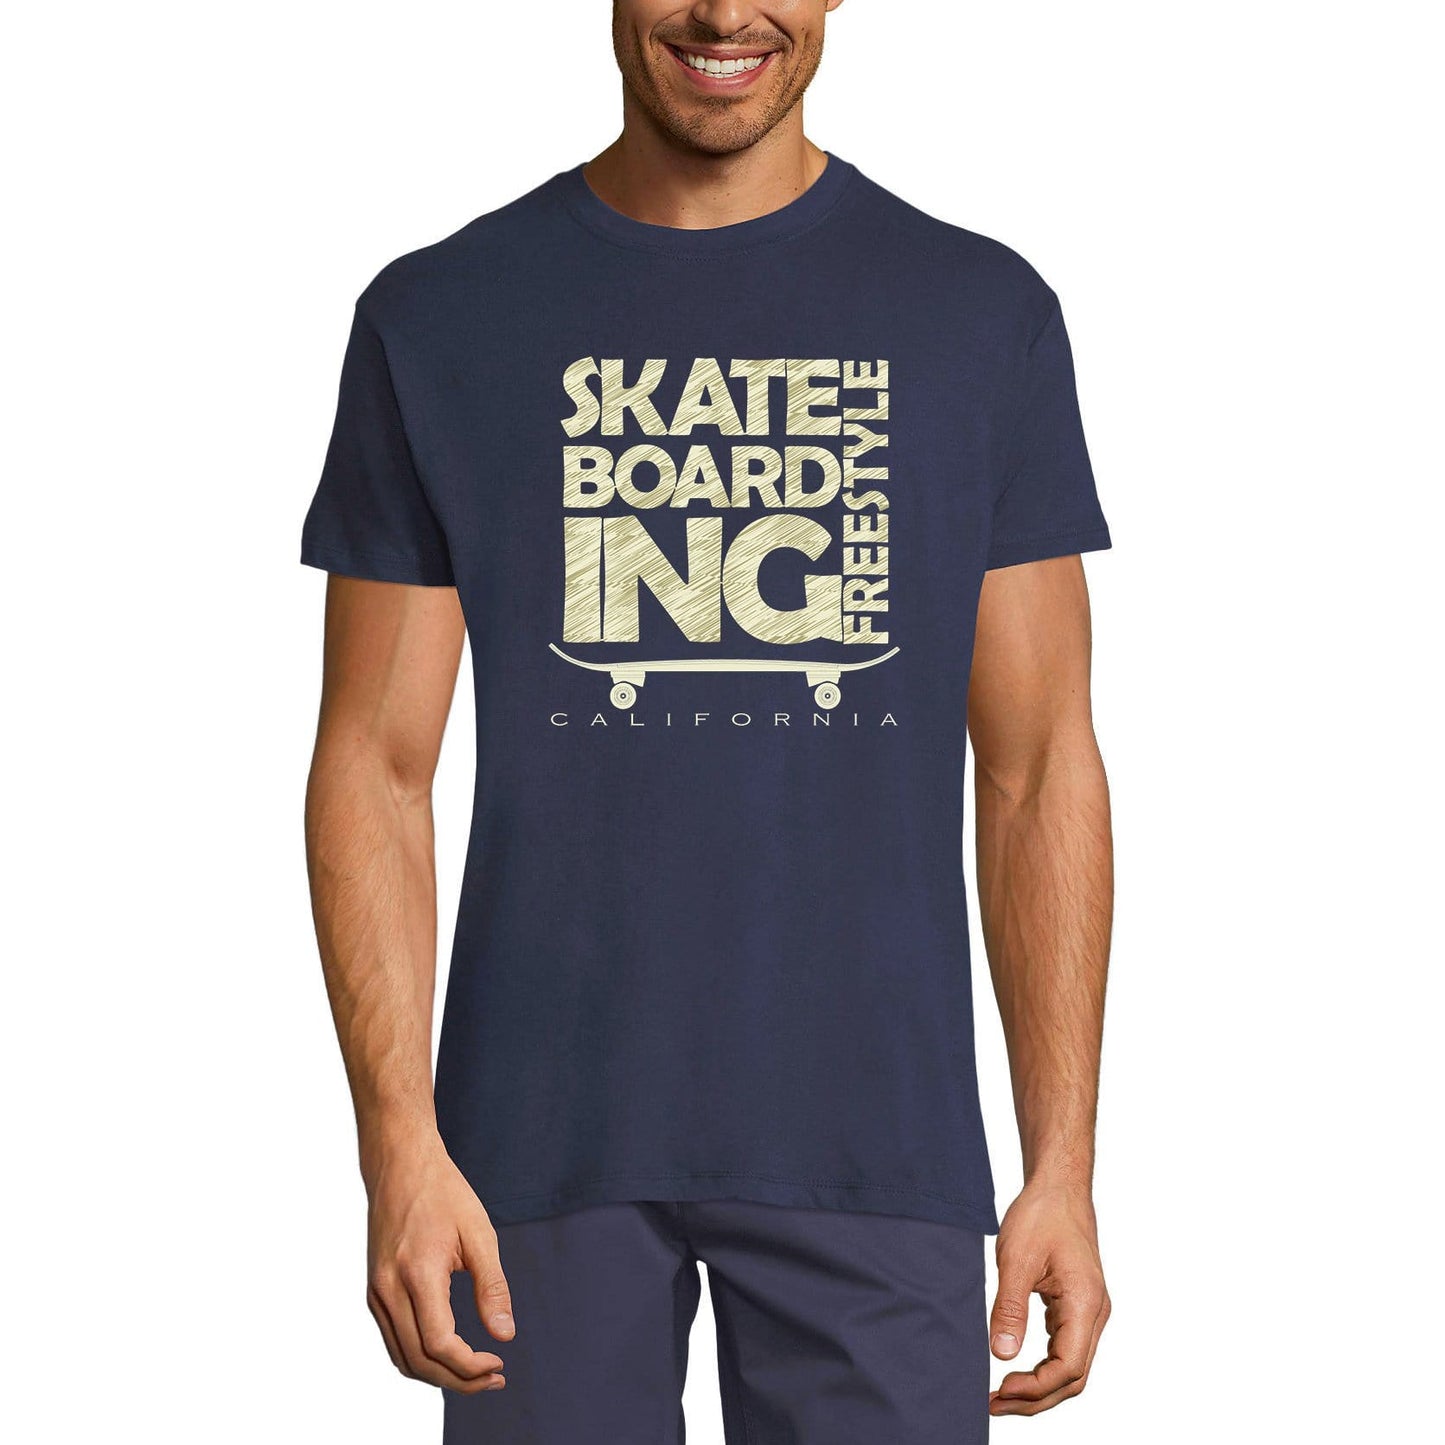 ULTRABASIC Men's Novelty T-Shirt Skate Boarding Lifestyle - California Skating Tee Shirt